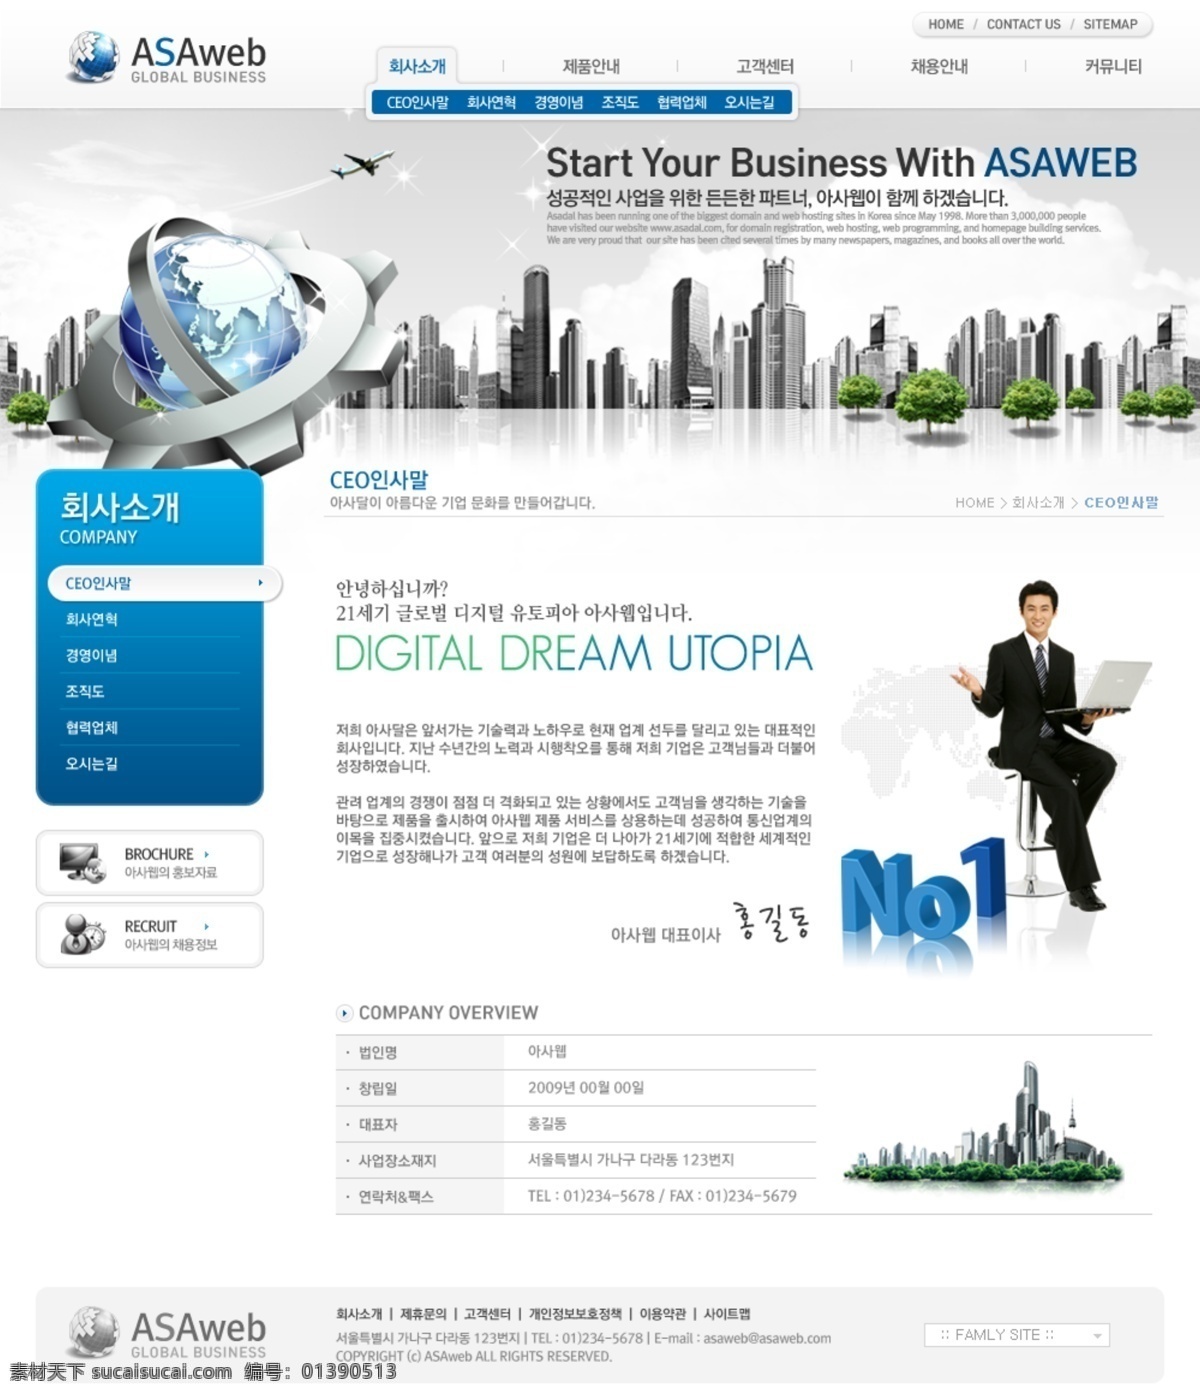 韩国 电脑 网站 模板 缒 酝 灸 逅 夭 南 略 网页素材 网页模板